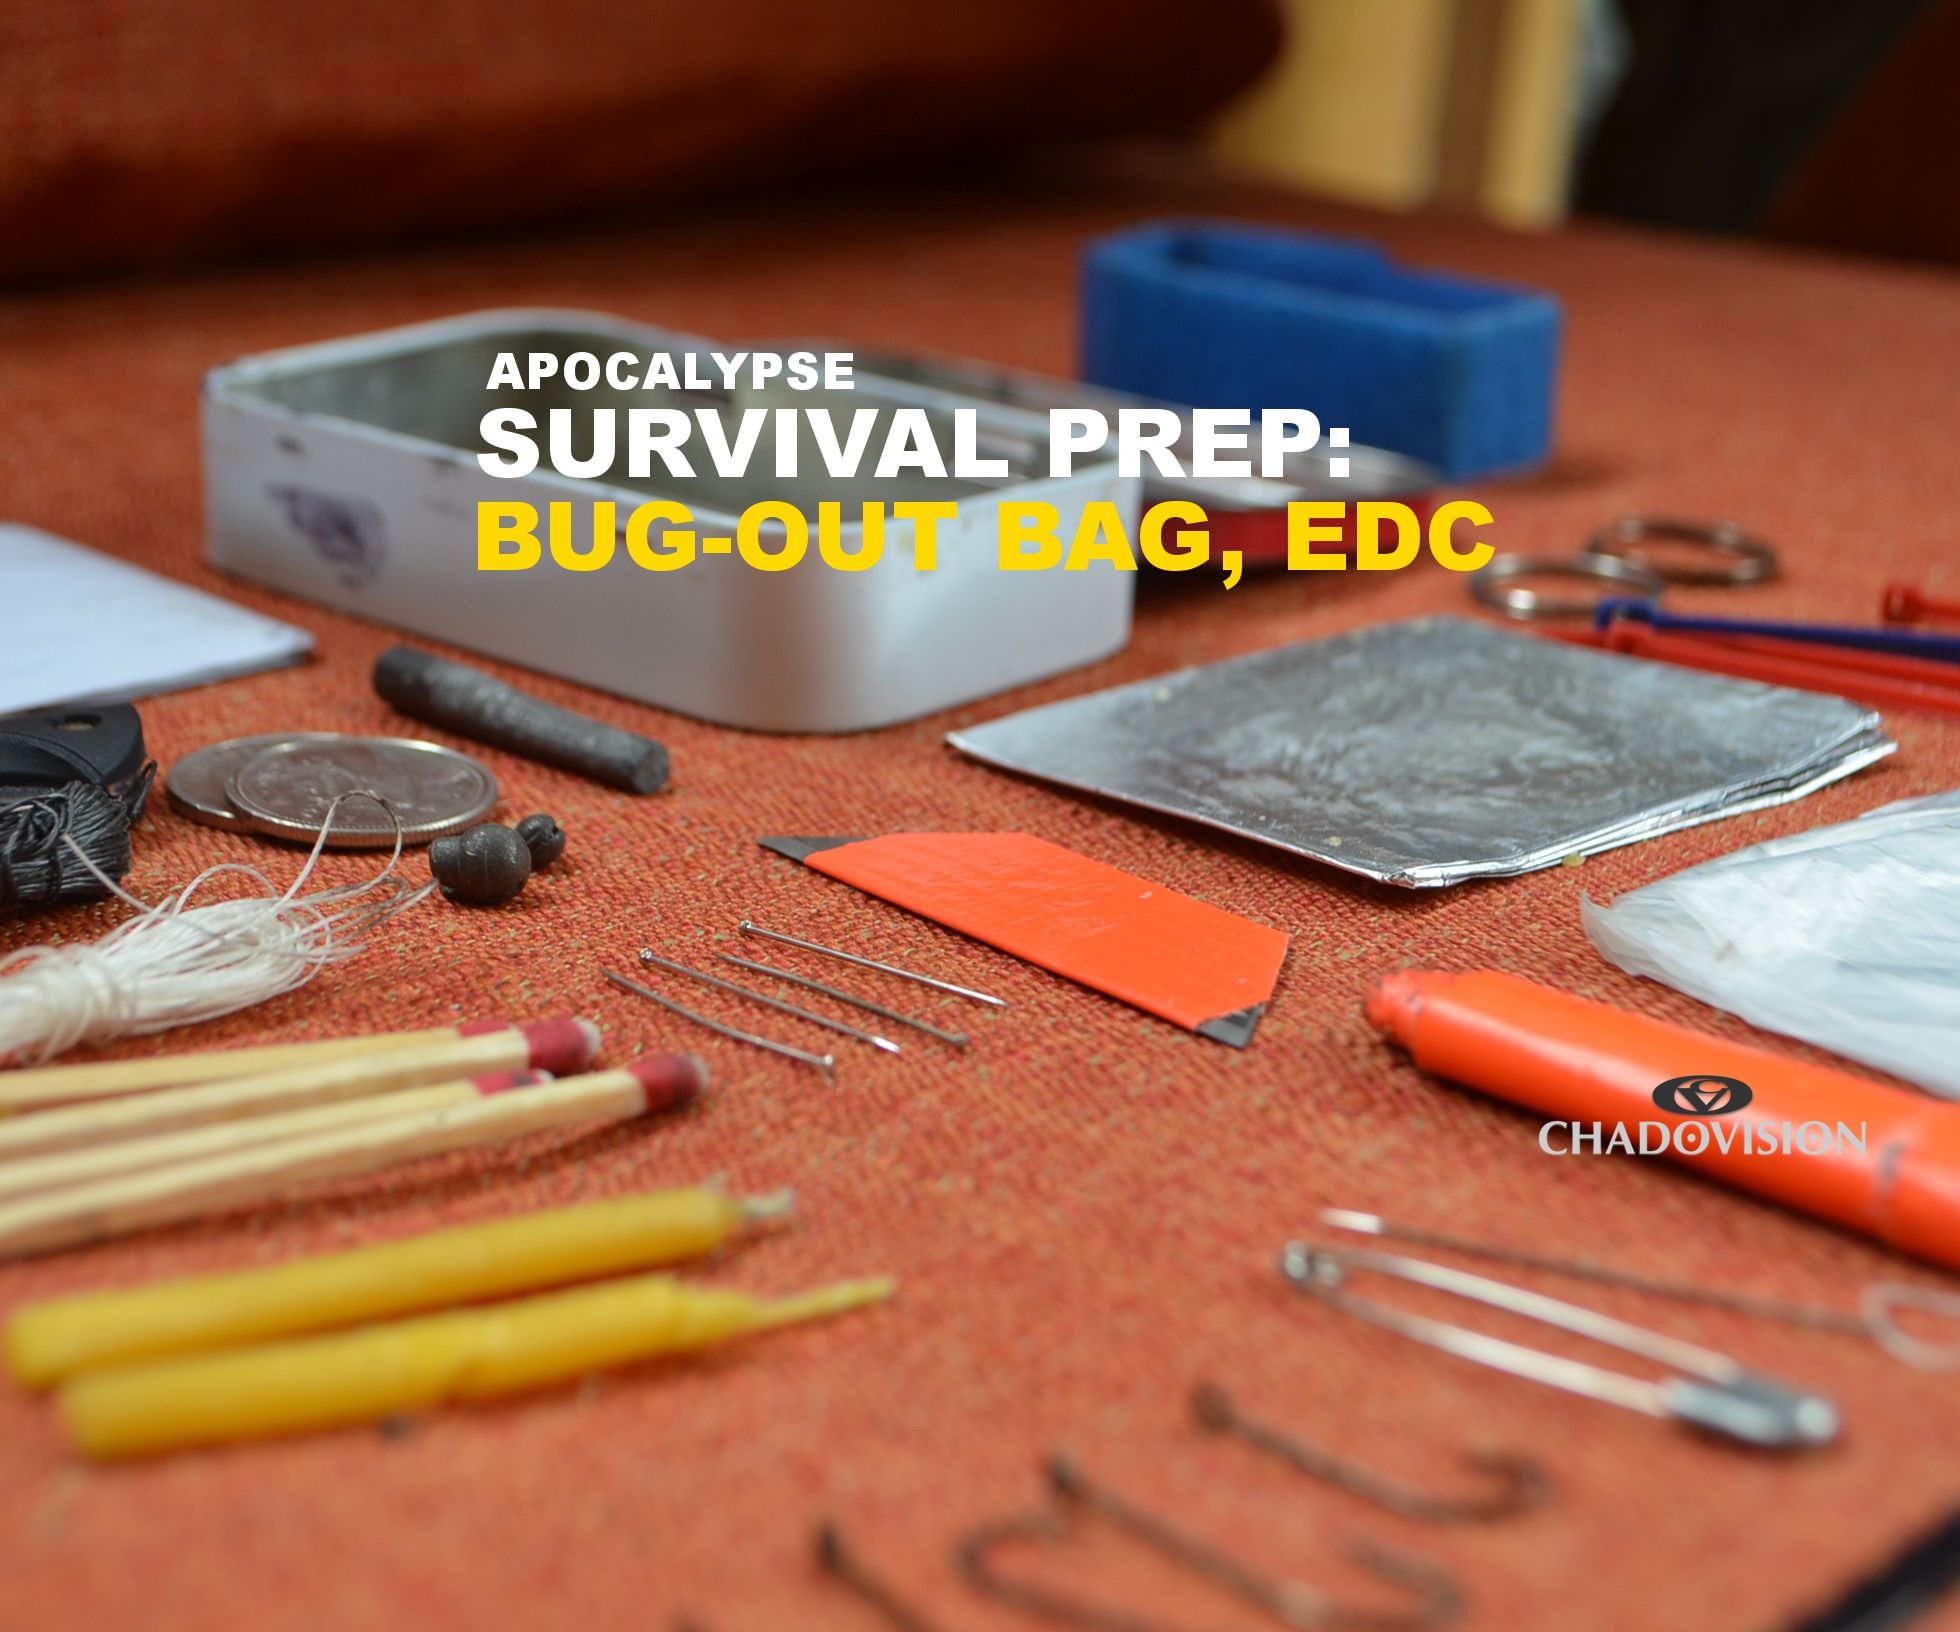 Apocalypse - Survival Prep: Bug-out bag - EDC